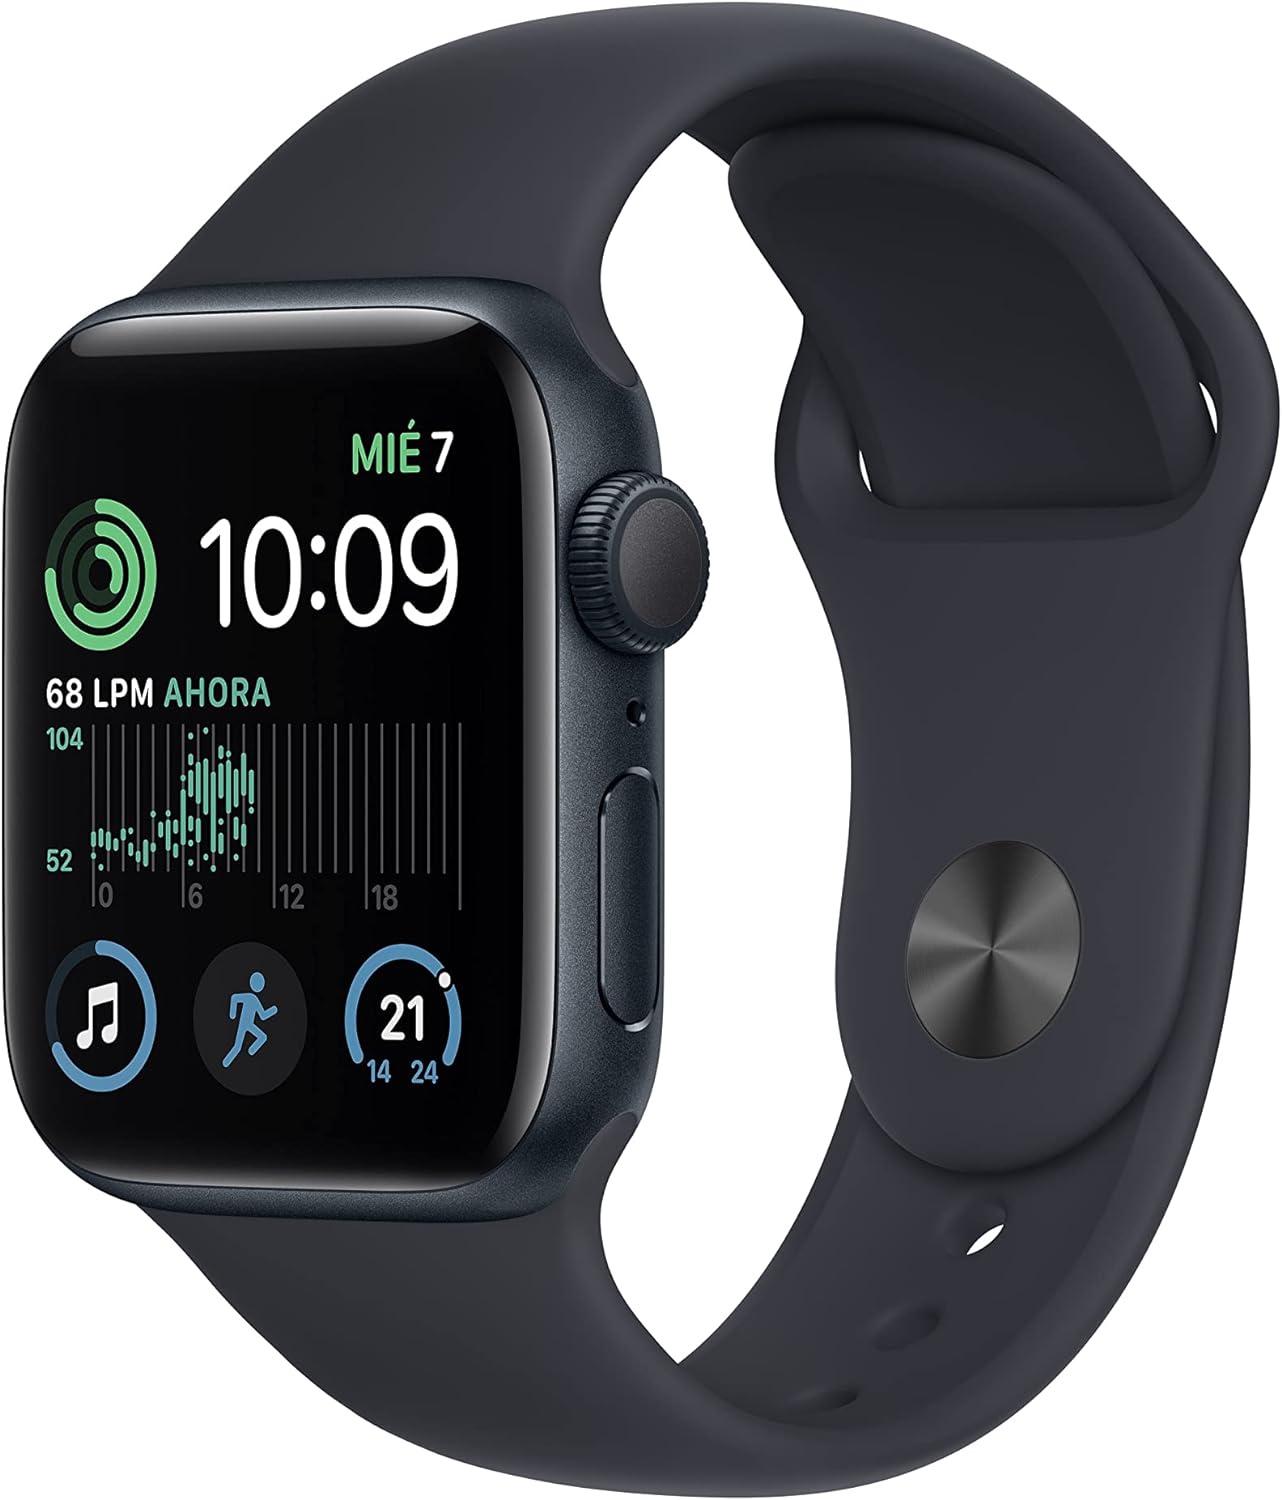 Apple Watch 8 vs Apple Watch SE 2 smartwatch